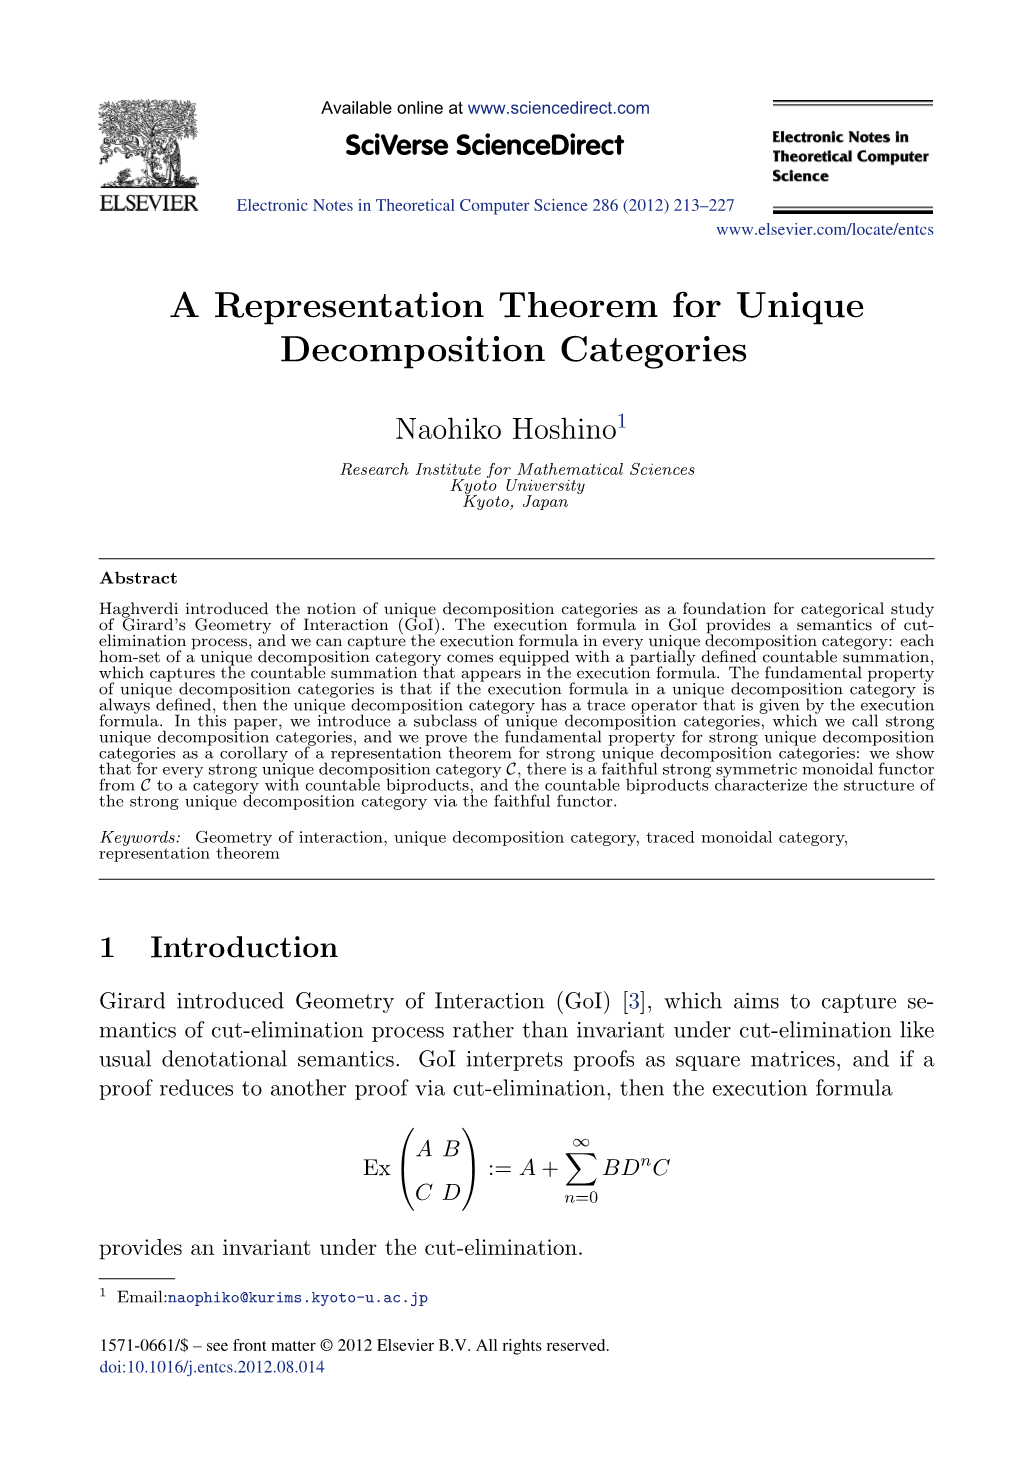 A Representation Theorem for Unique Decomposition Categories